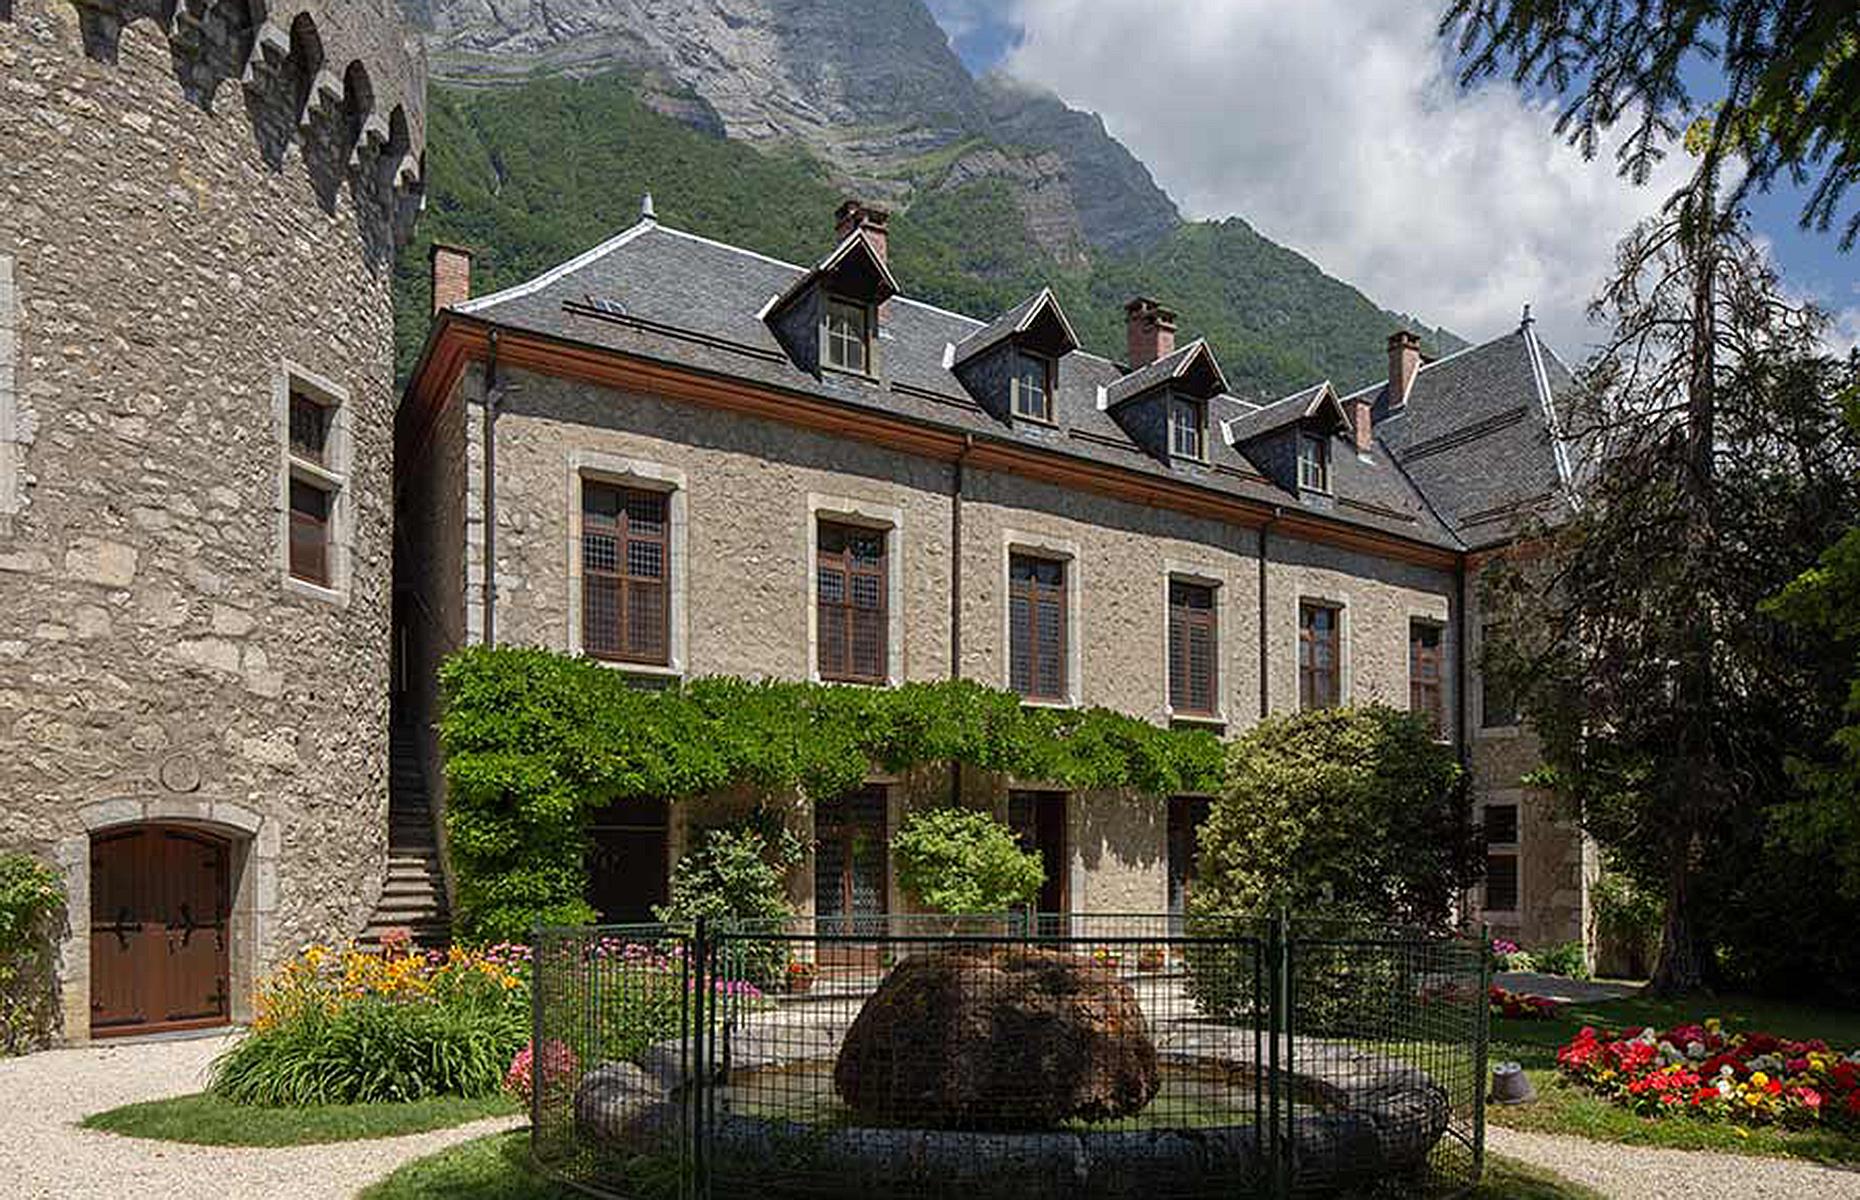 Medieval castle, Savoie, France: £2.2 million ($2.7m)